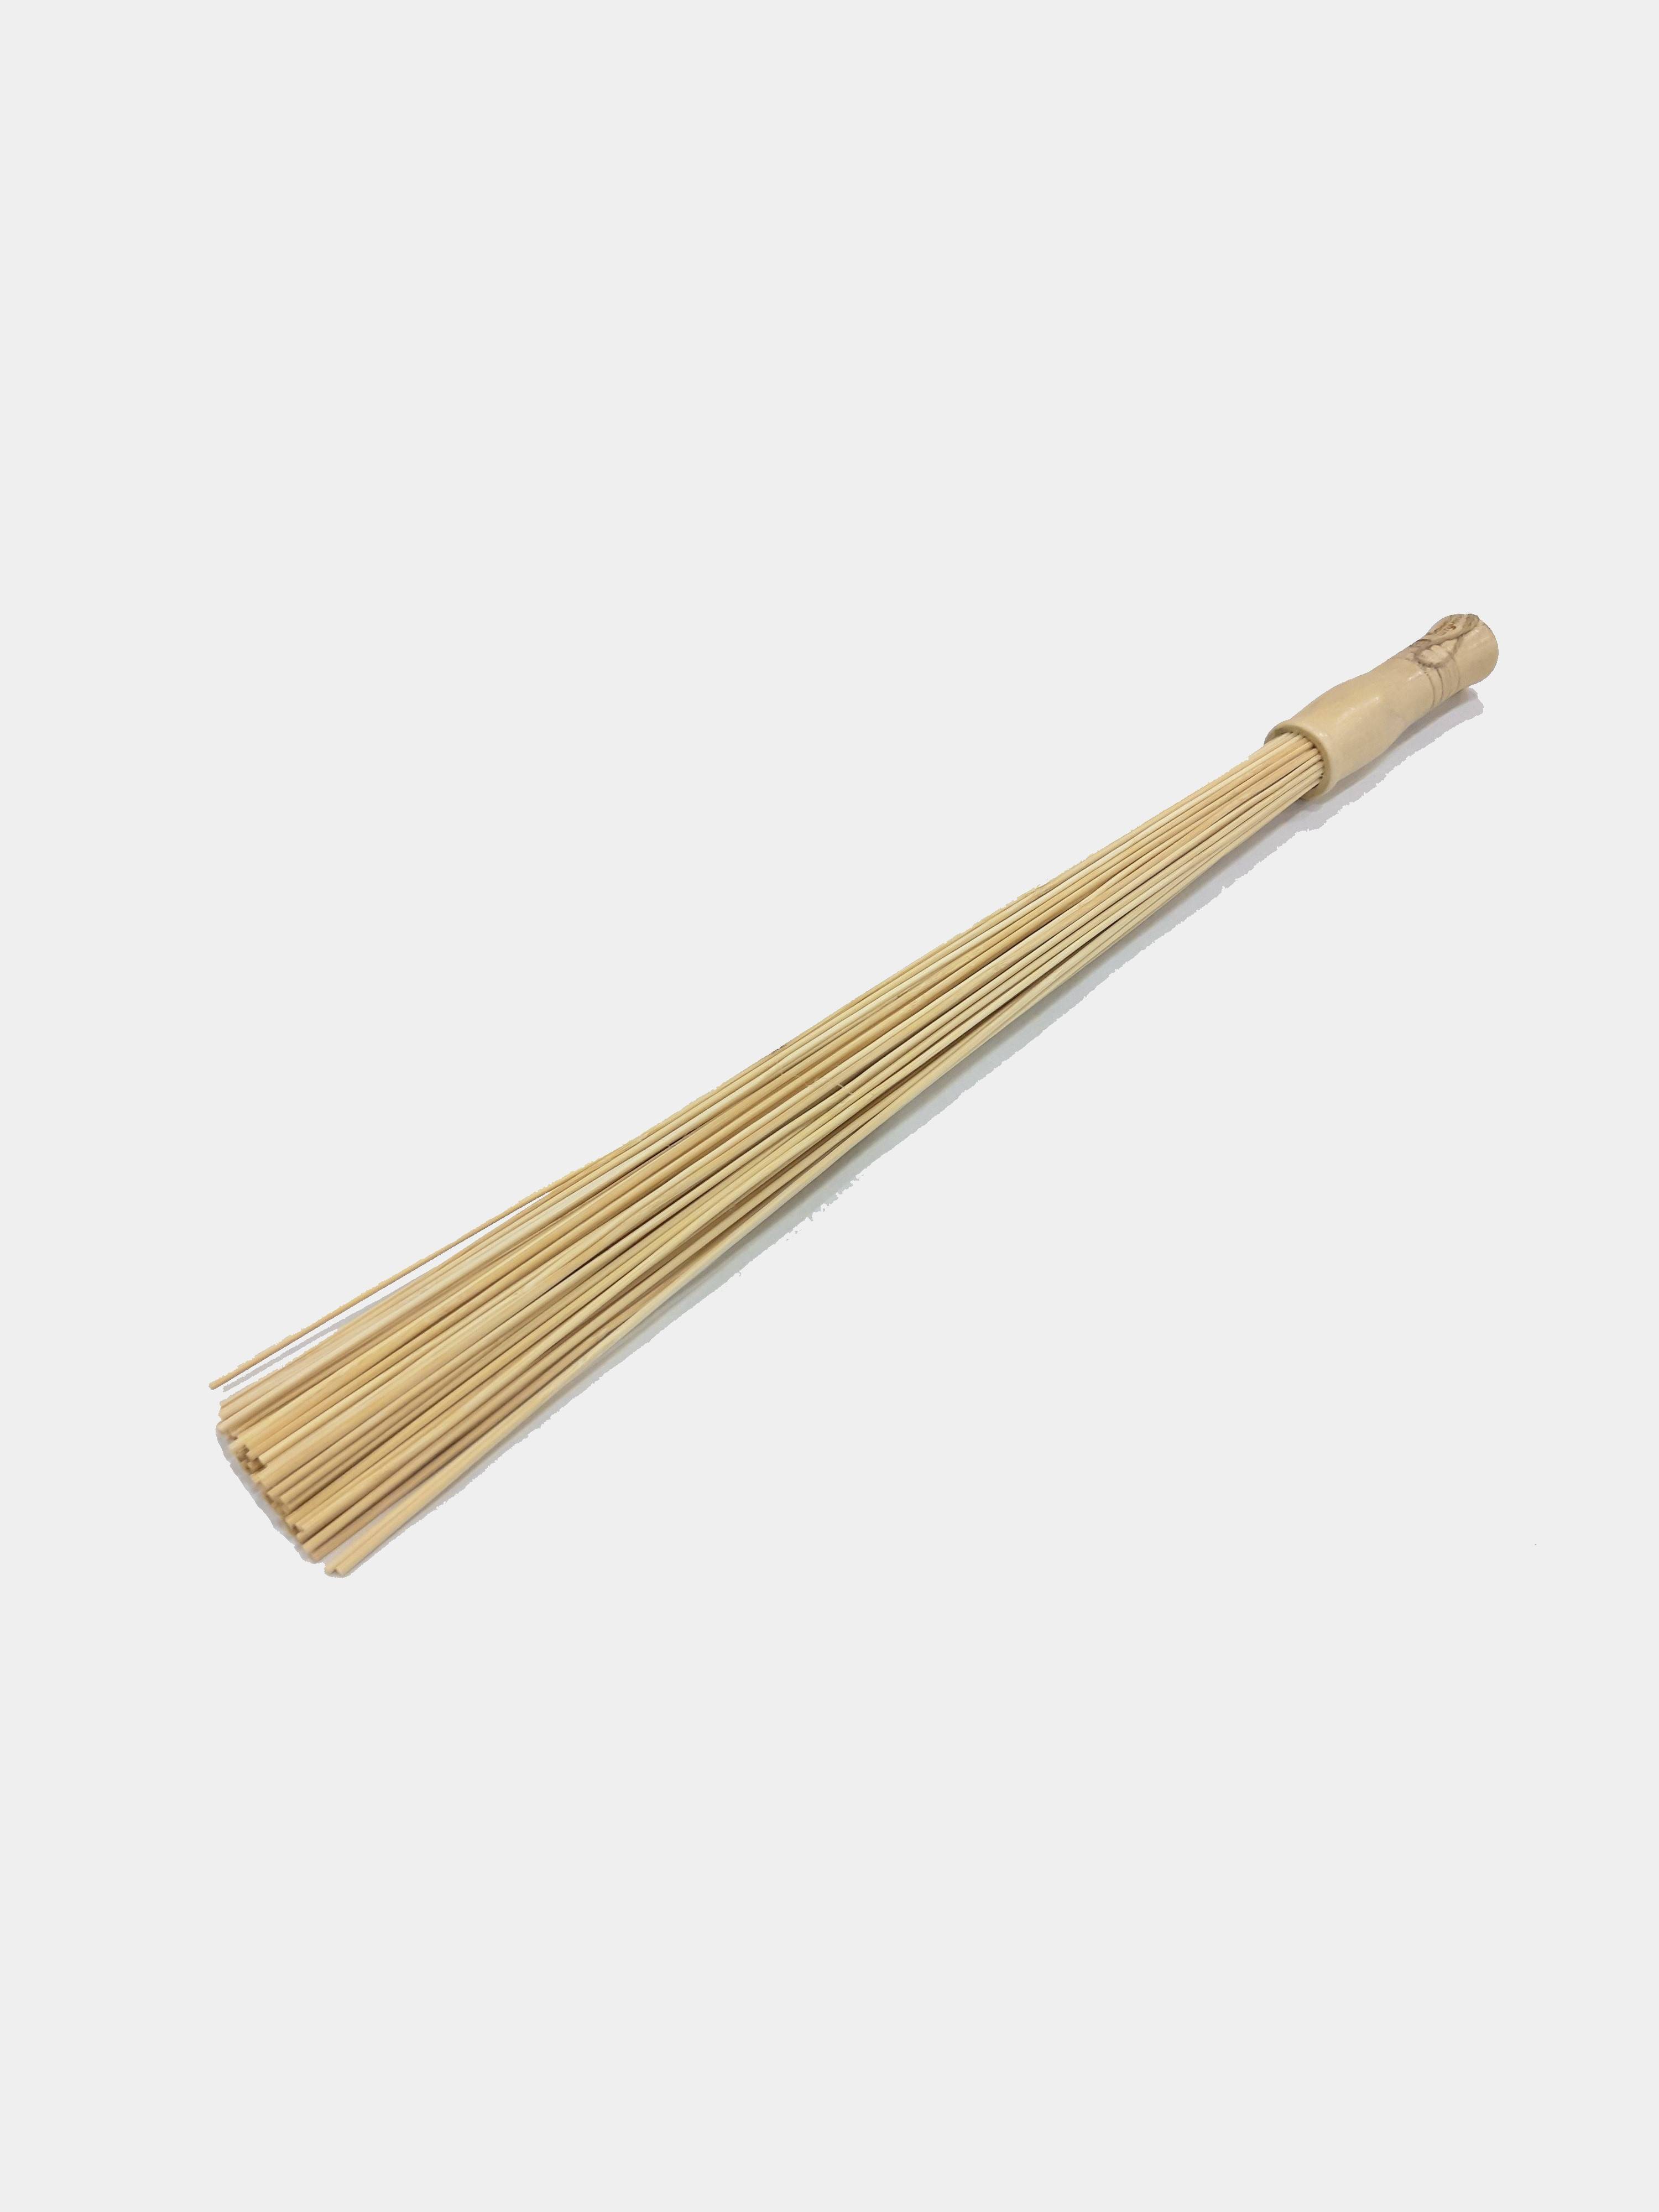 Веник для бани бамбуковый - строим баню или сауну